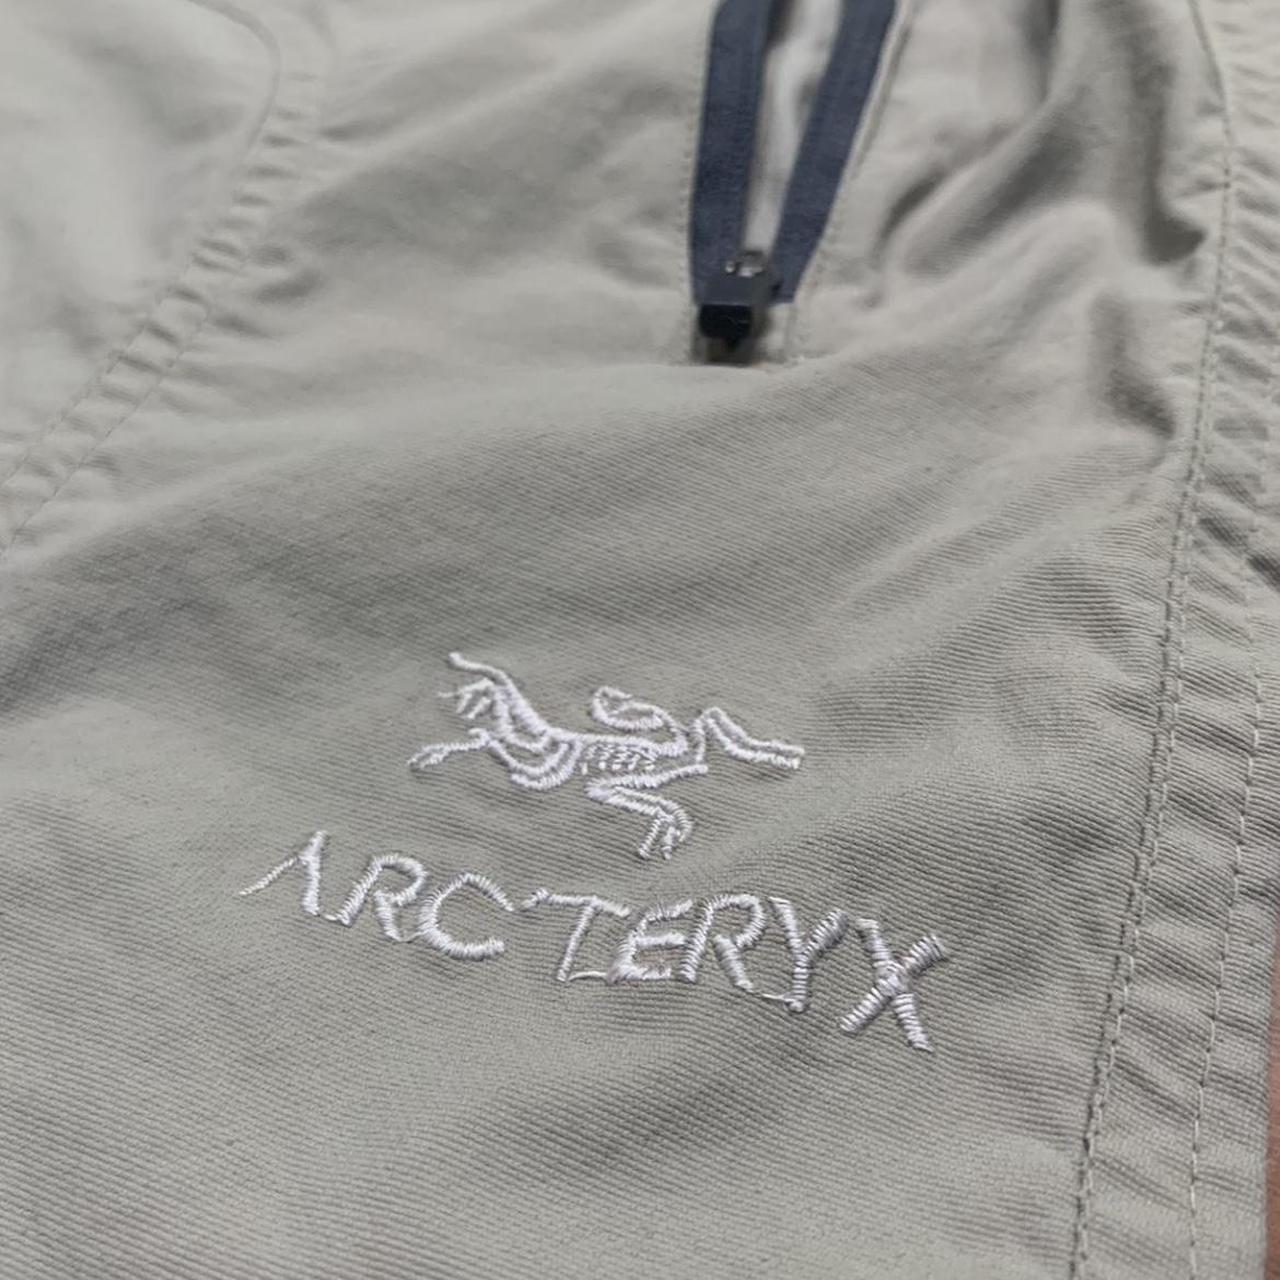 Repop Arcteryx beige shorts Size womens small Zipper... - Depop